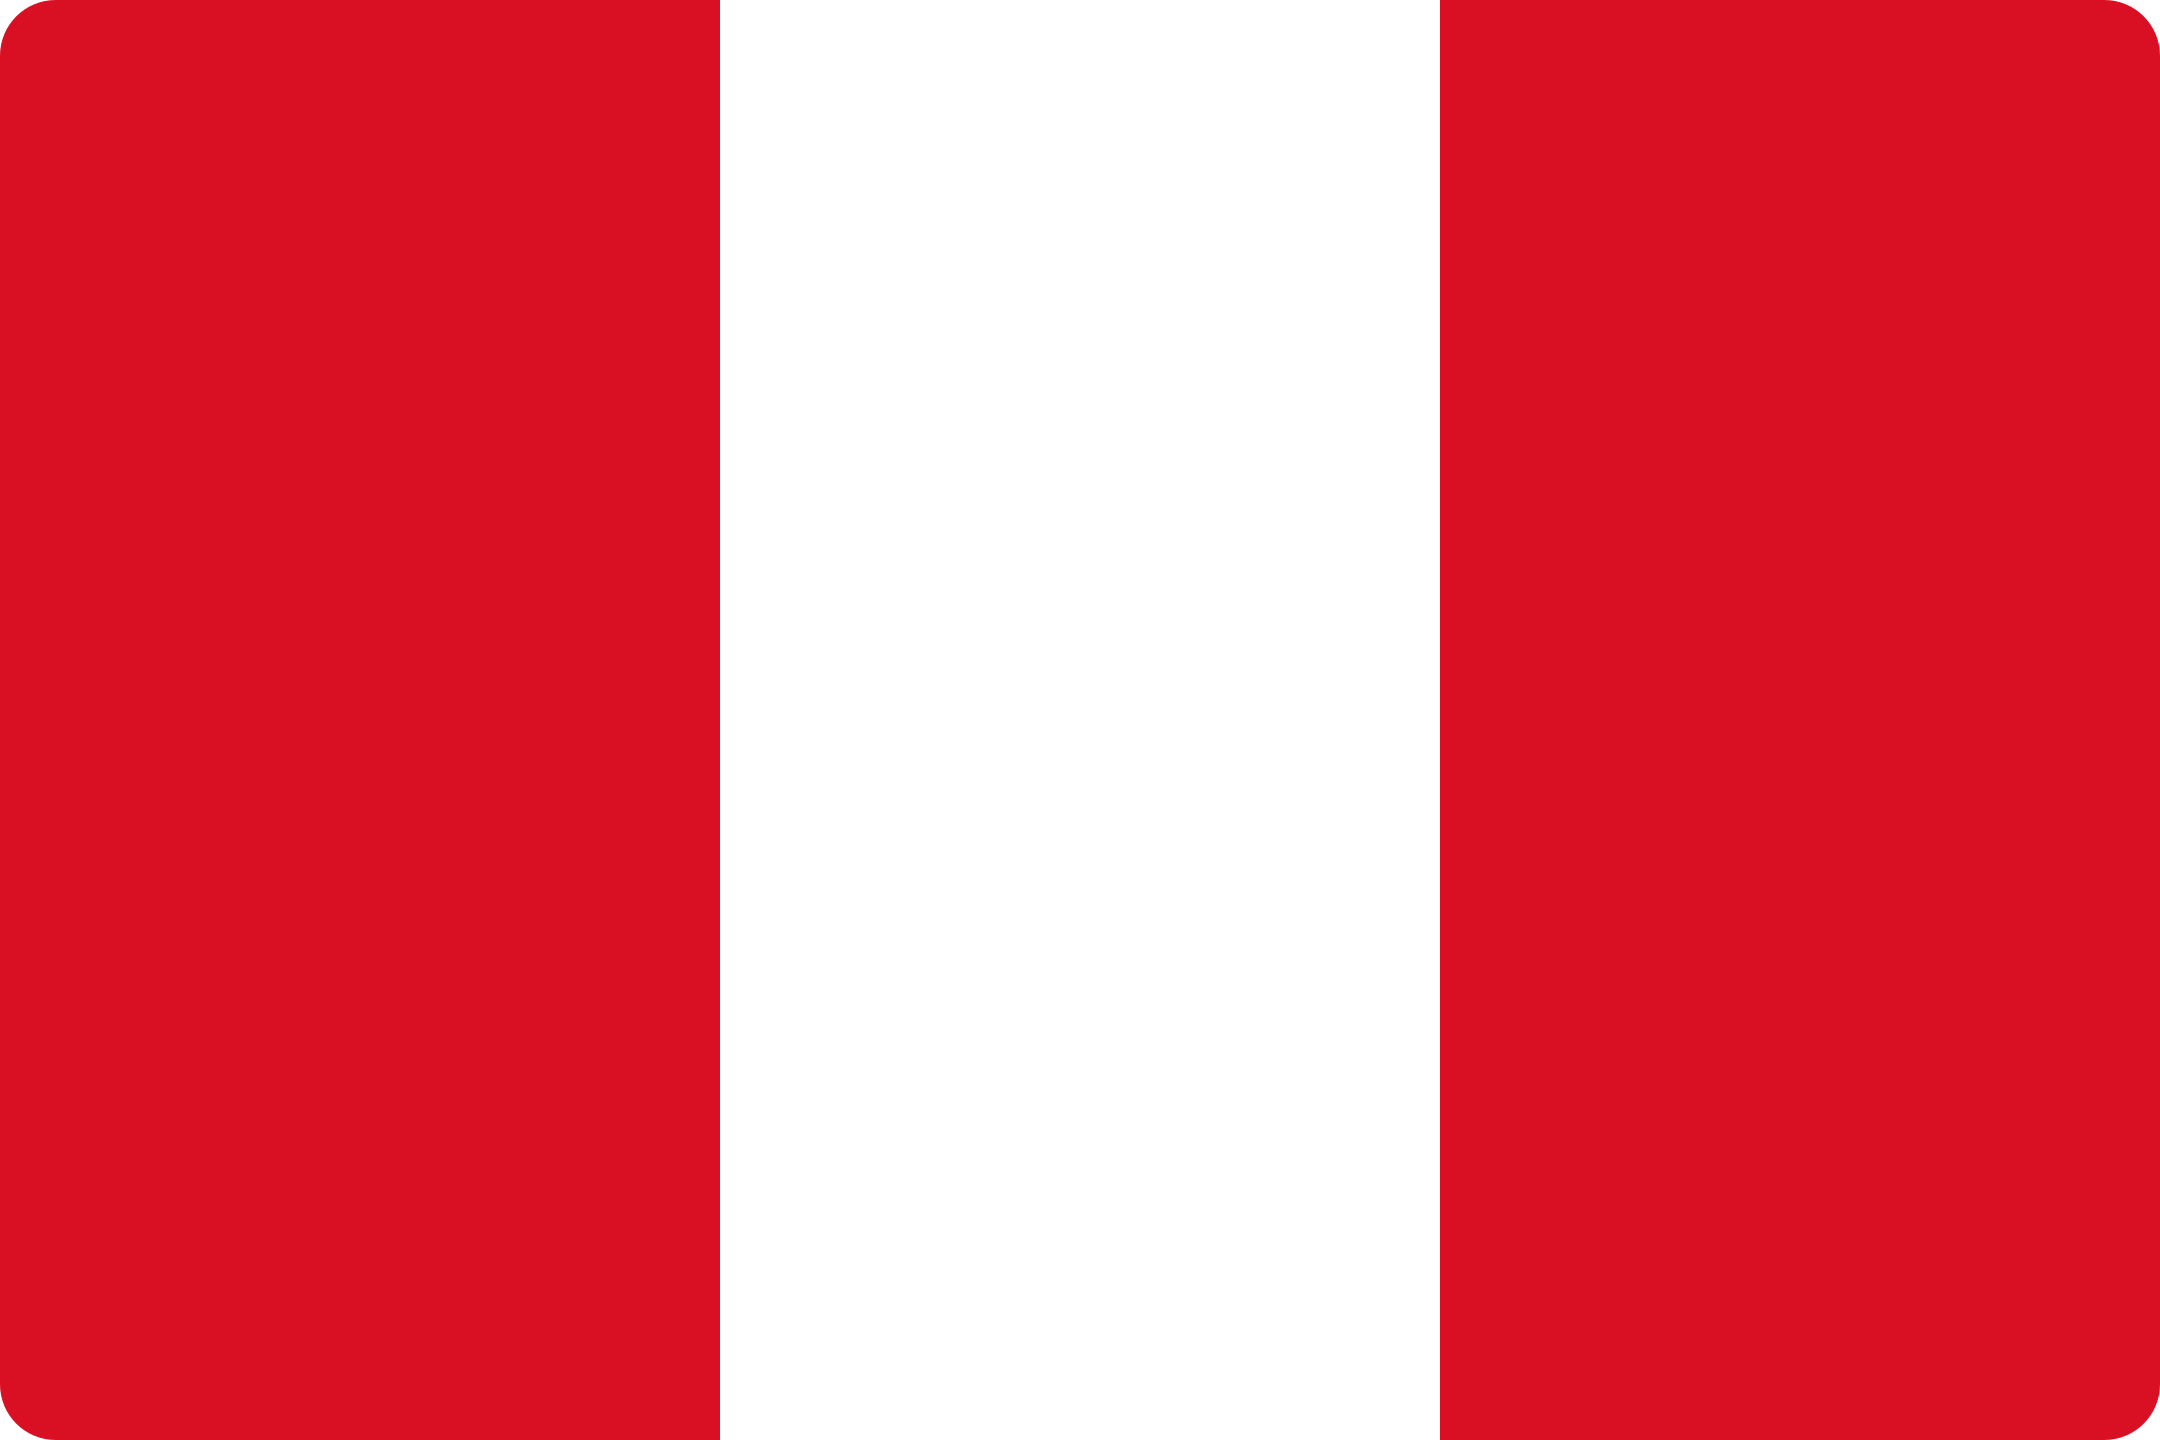 bandeira peru flag 1 - Flag of Peru